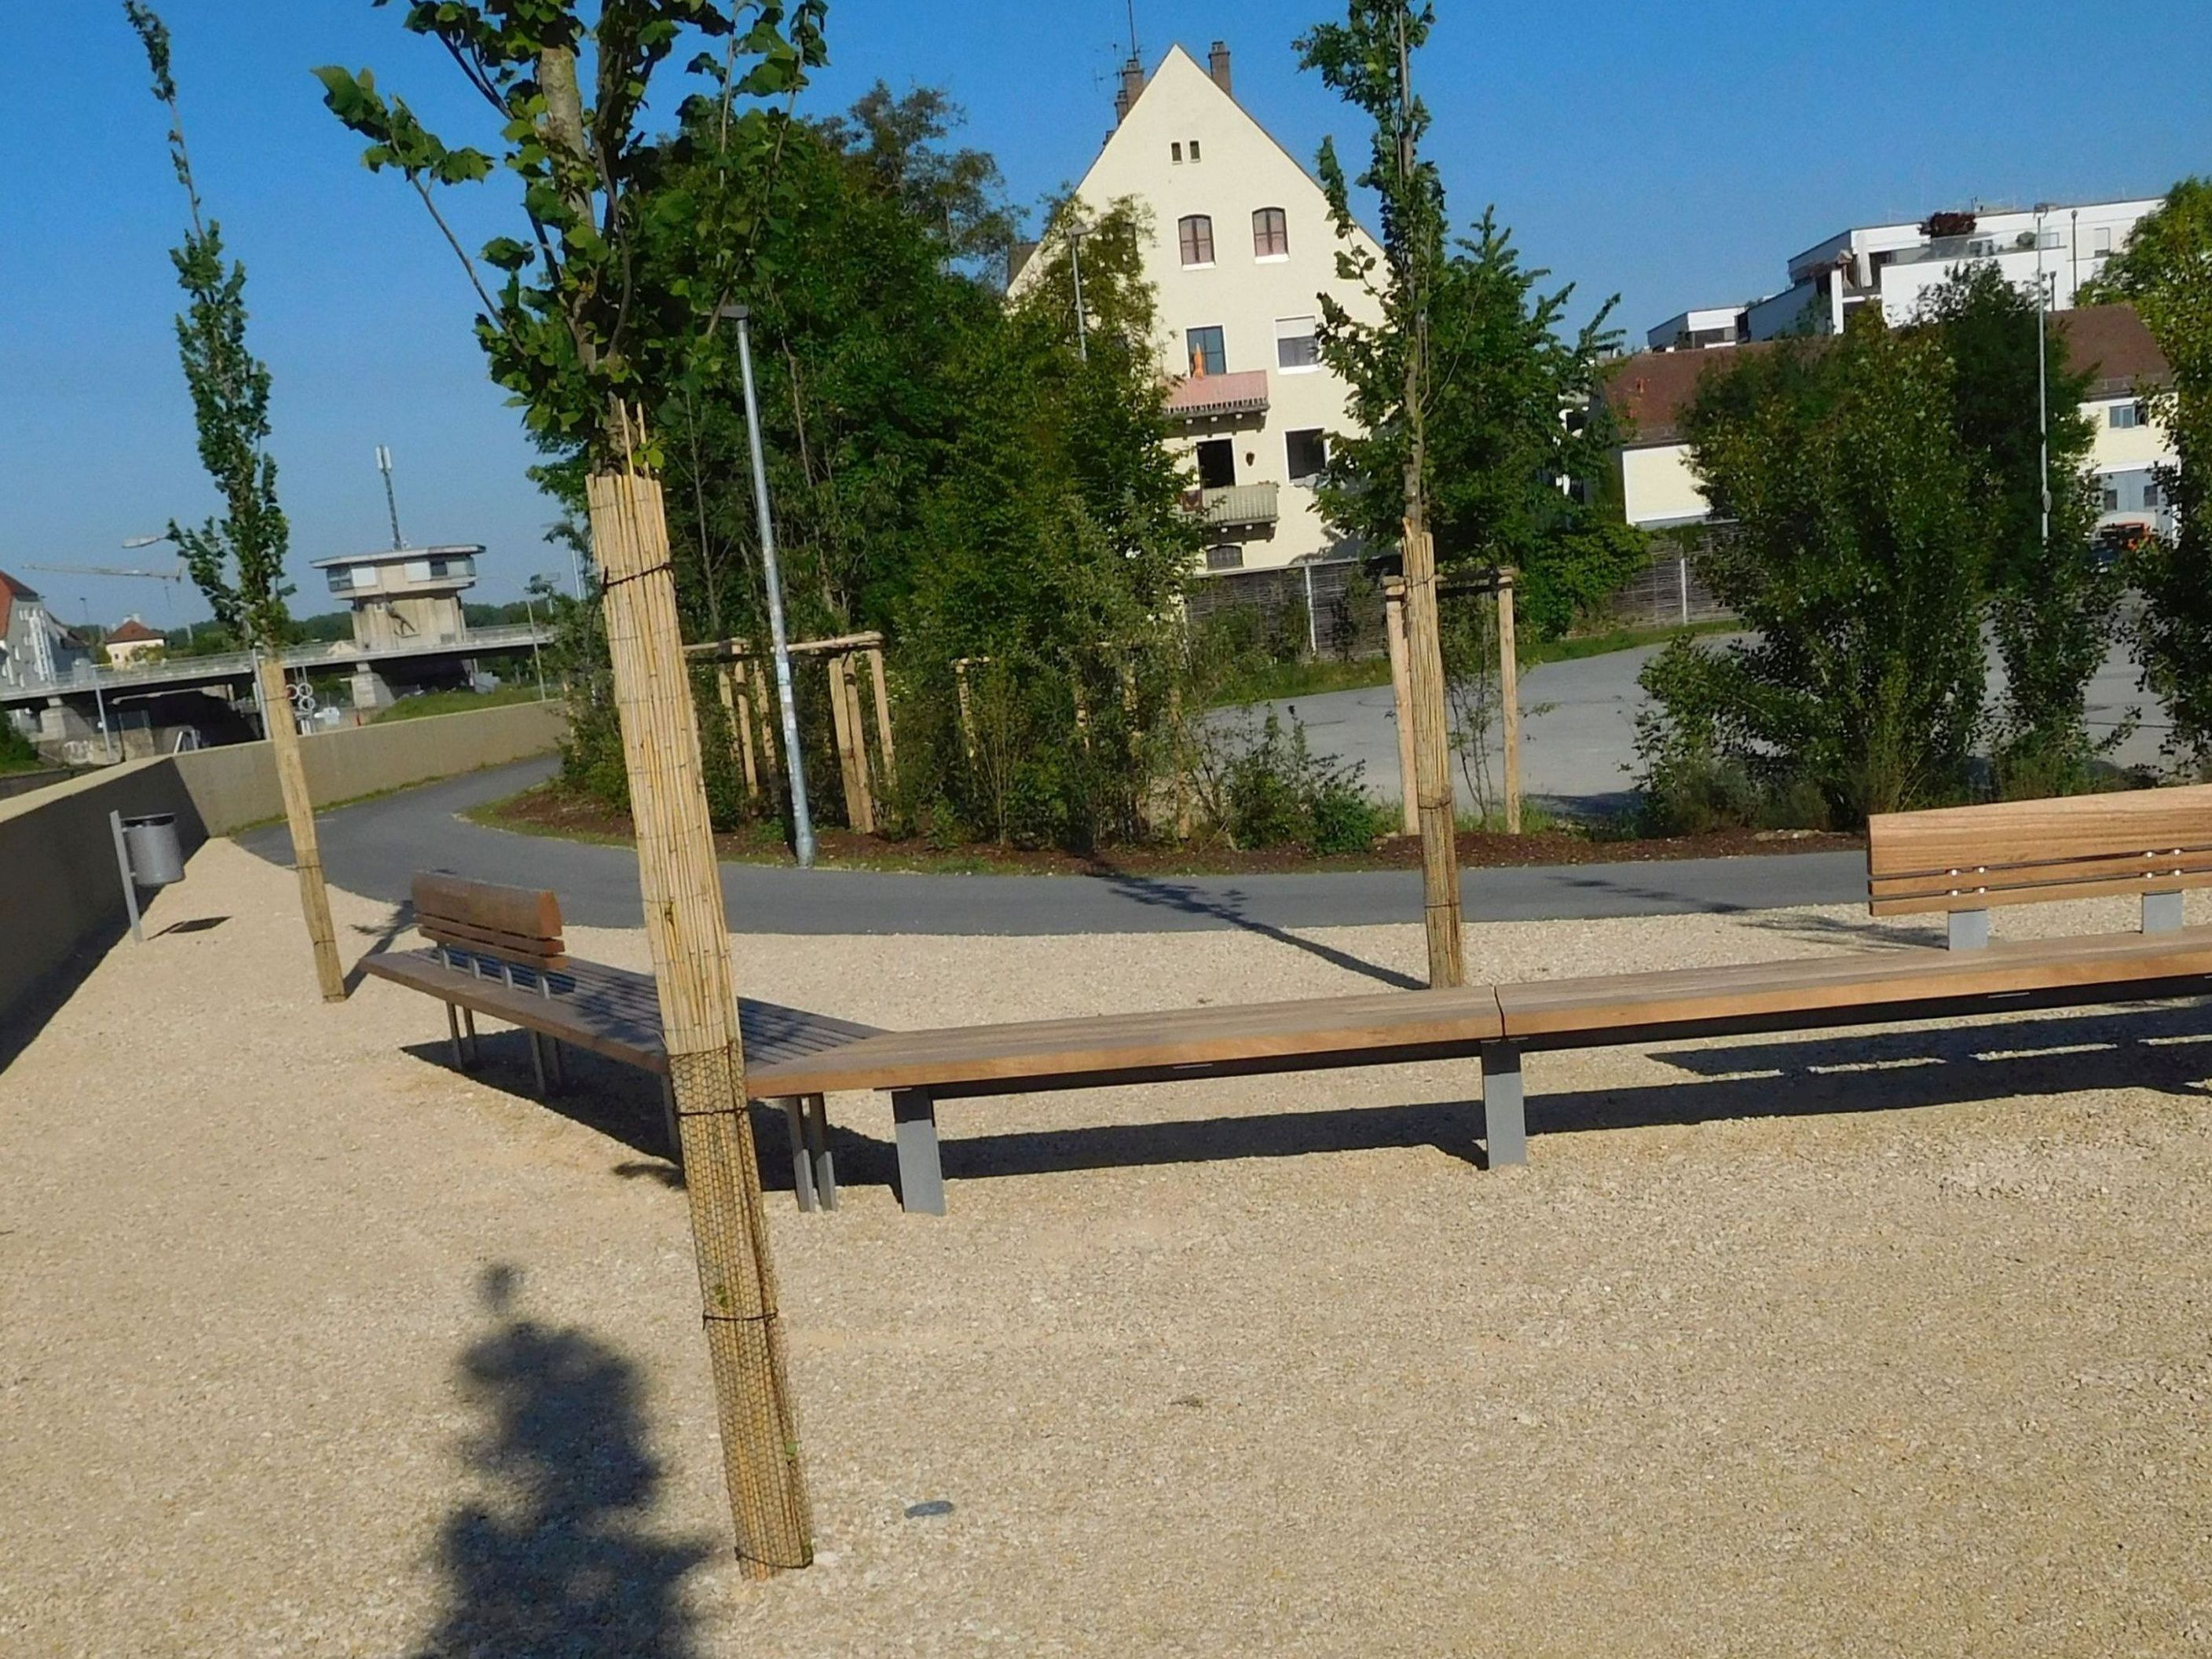 Die Ecke der Mündung des Flusses Regen in die Donau mit neu angelegtem, asphaltierten Radweg, einer Sitzbank in L Form aus Holz und neuer Bepflanzung bei blauem Himmel, Häuser im Hintergrund